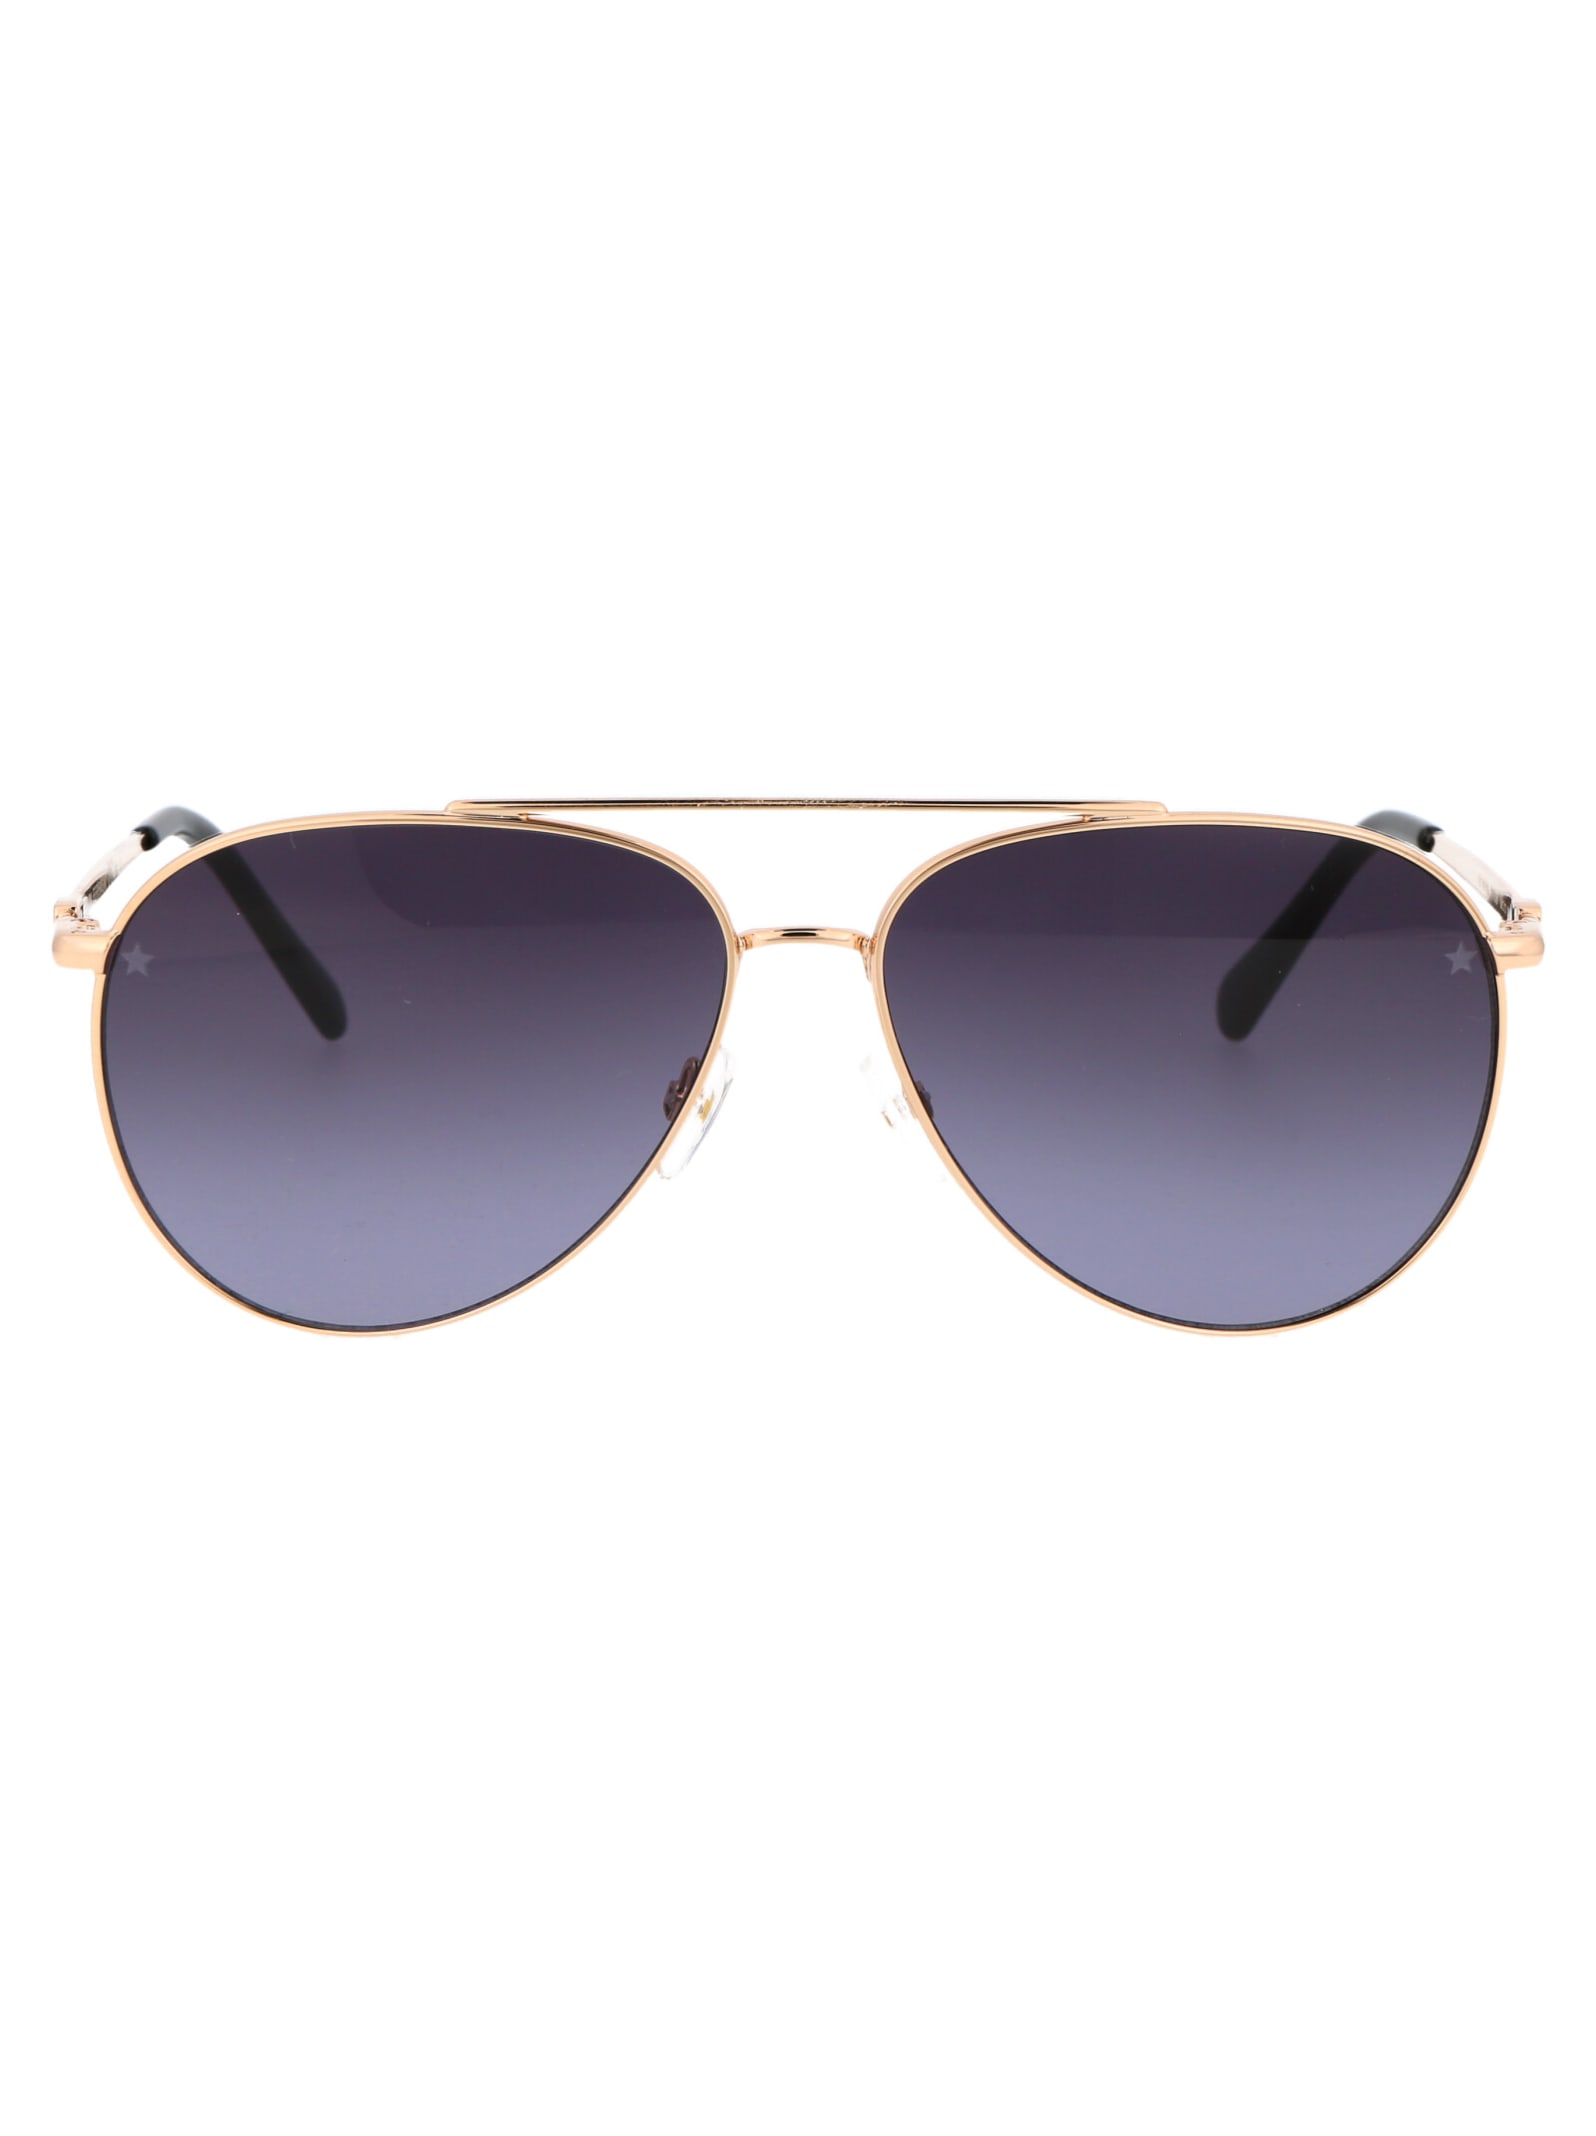 Cf 1001/s Sunglasses